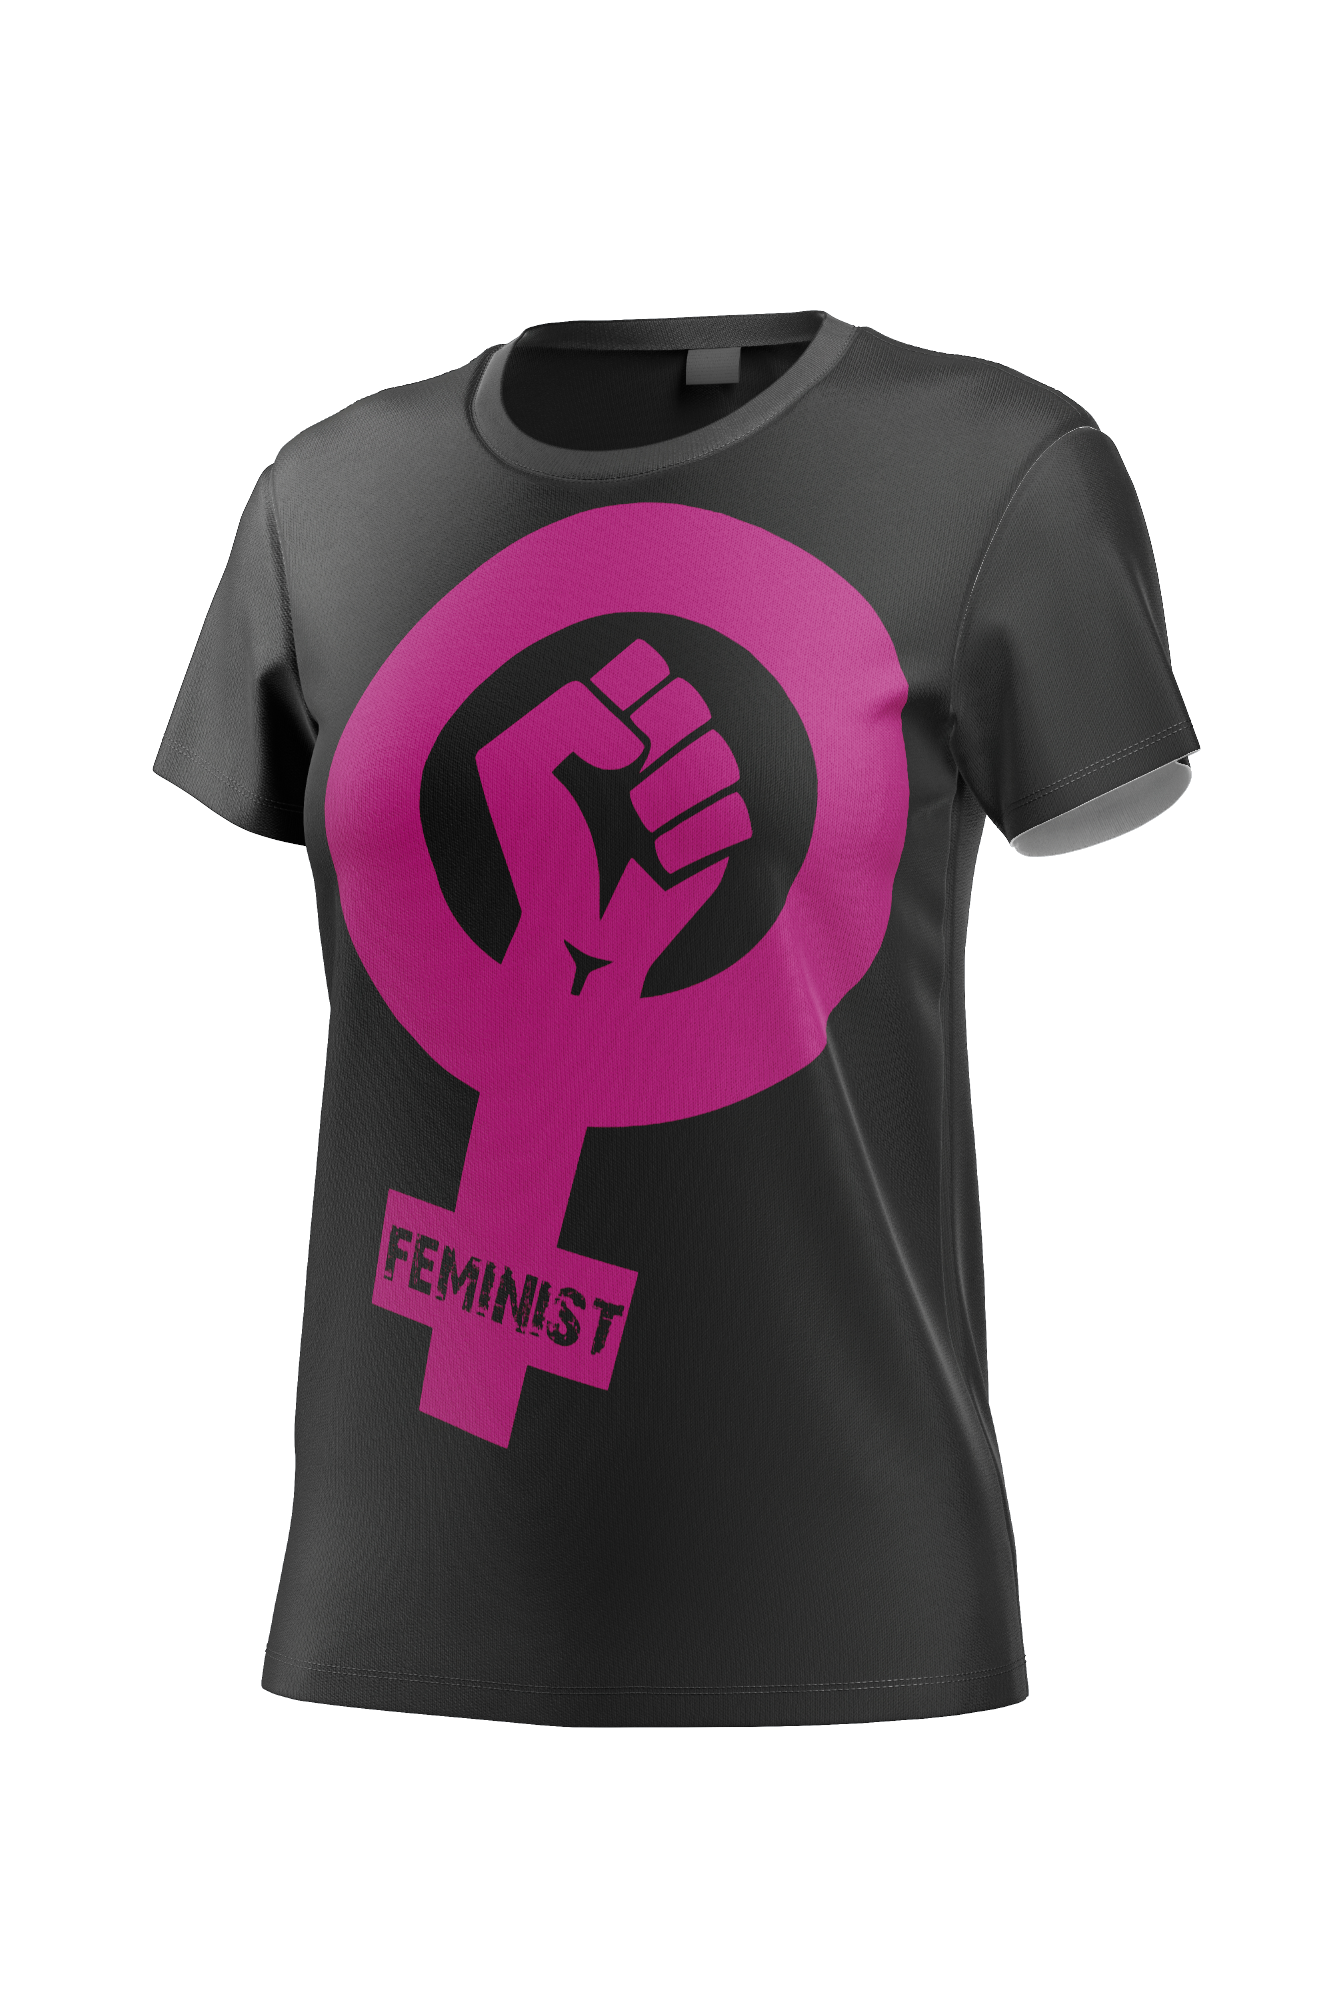 Camiseta feminista mujeres 8M